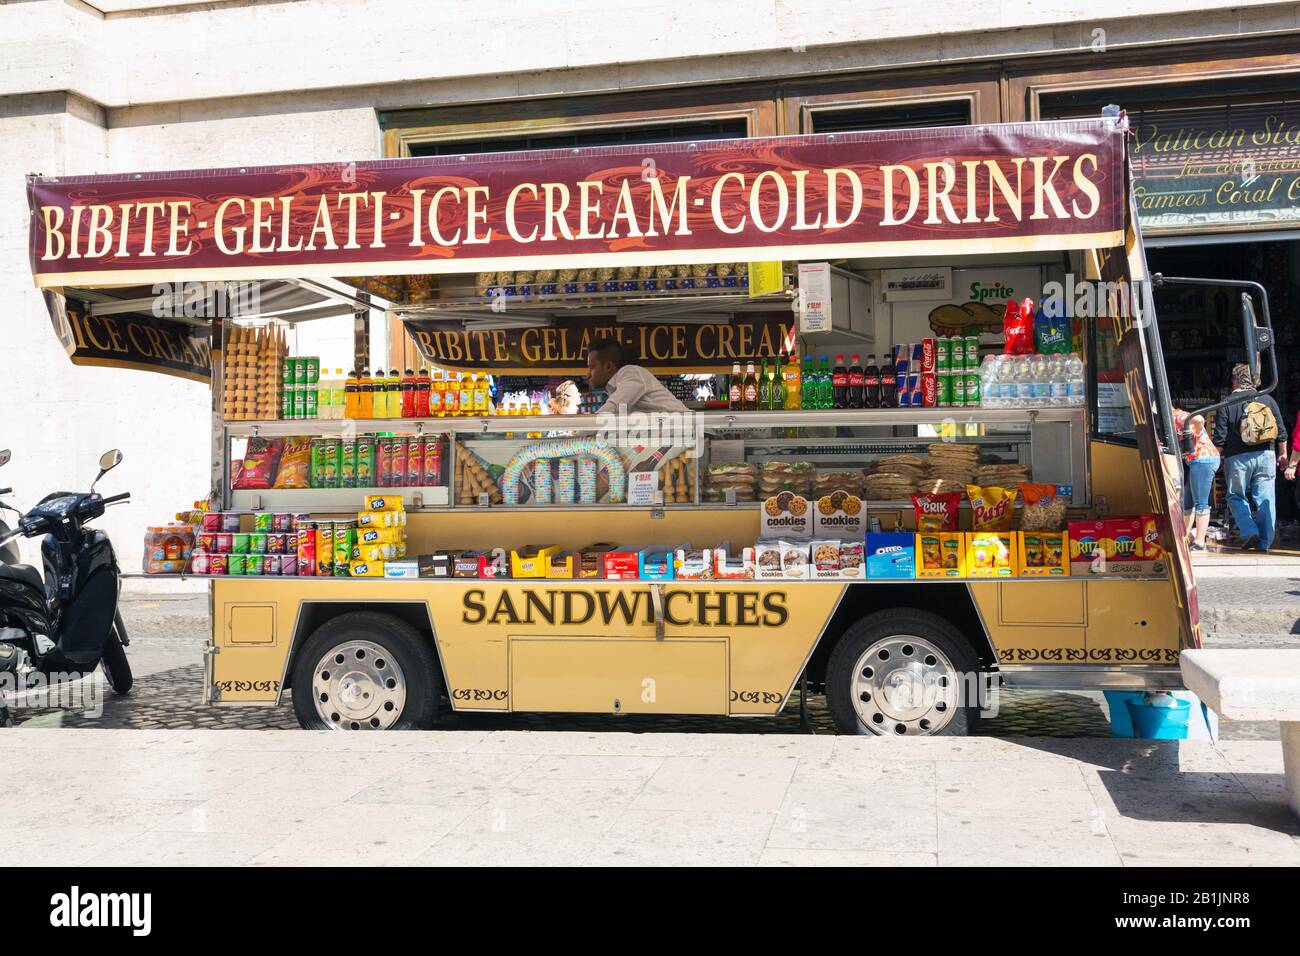 Heladería, gelati y furgoneta de bebidas en Roma, Italia Foto de stock